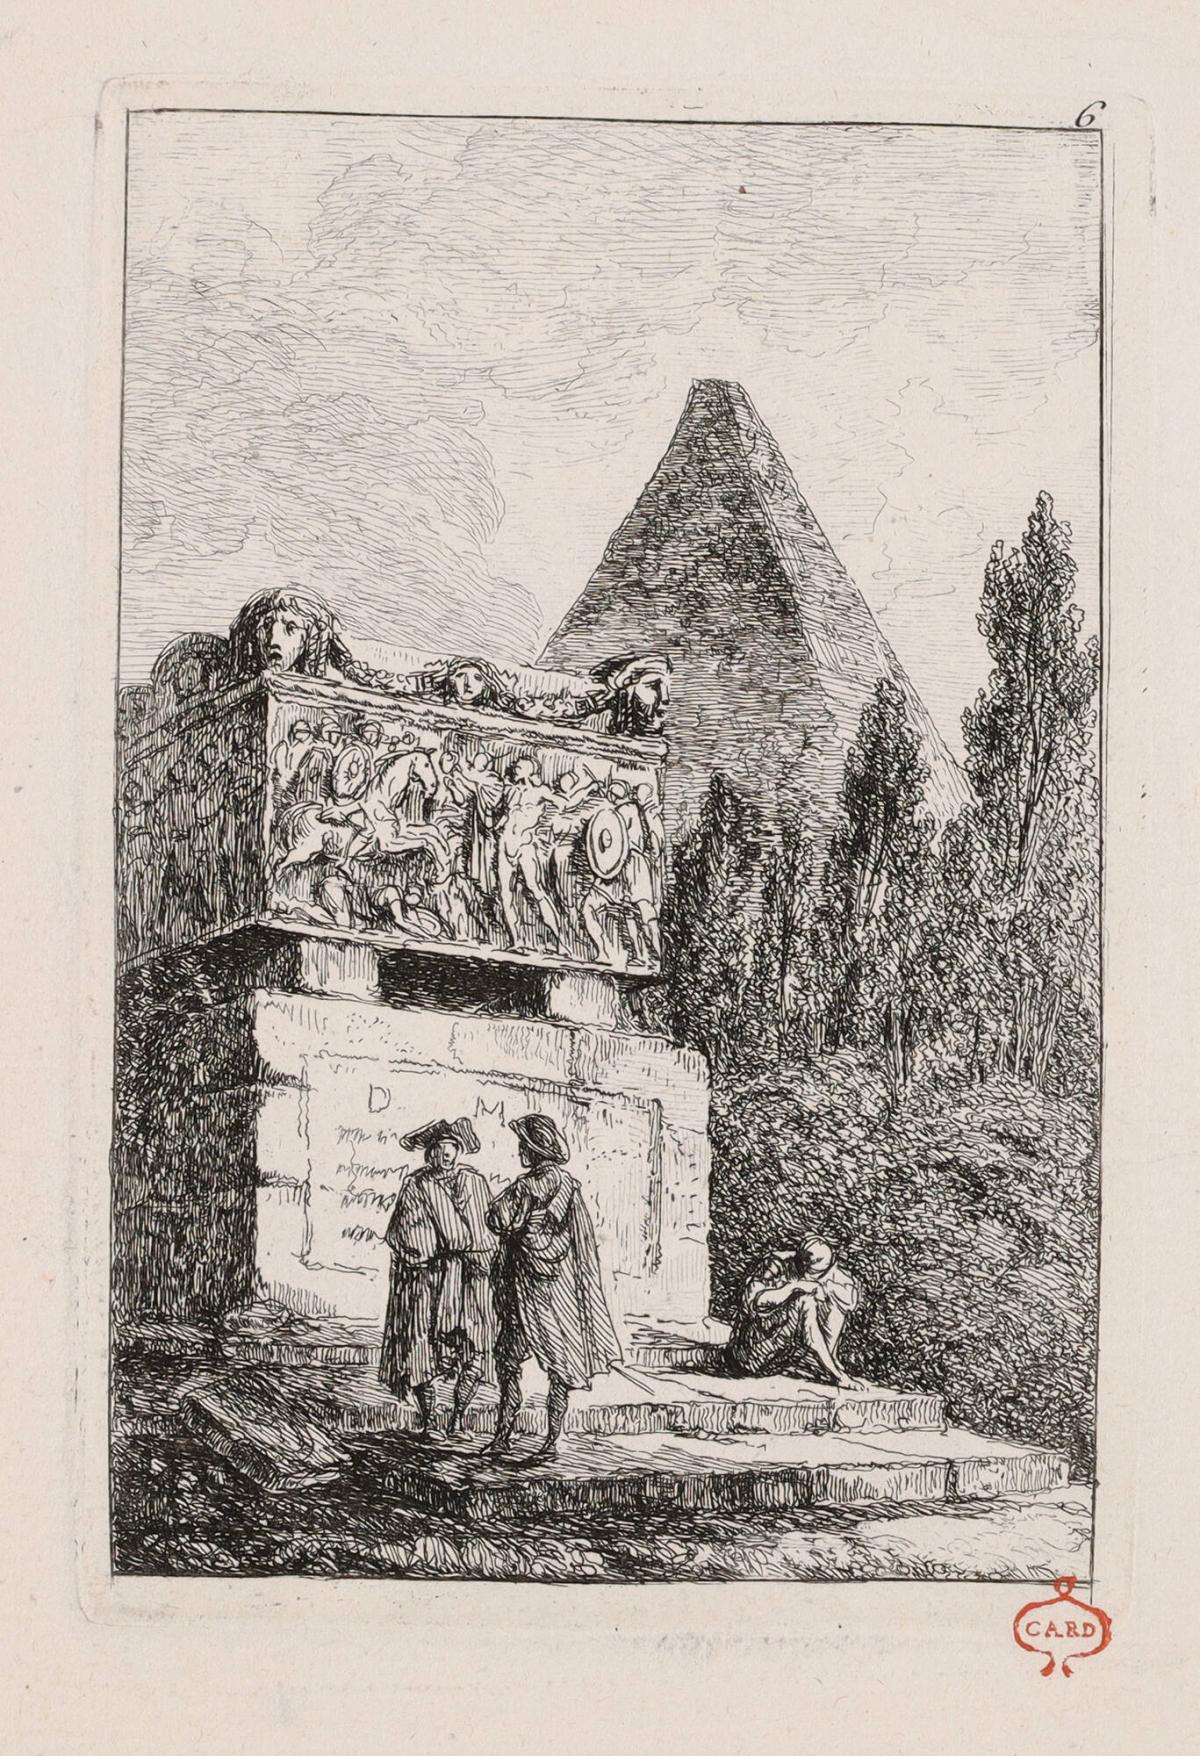 La Sarcophage, from the series Les Soirées de Rome